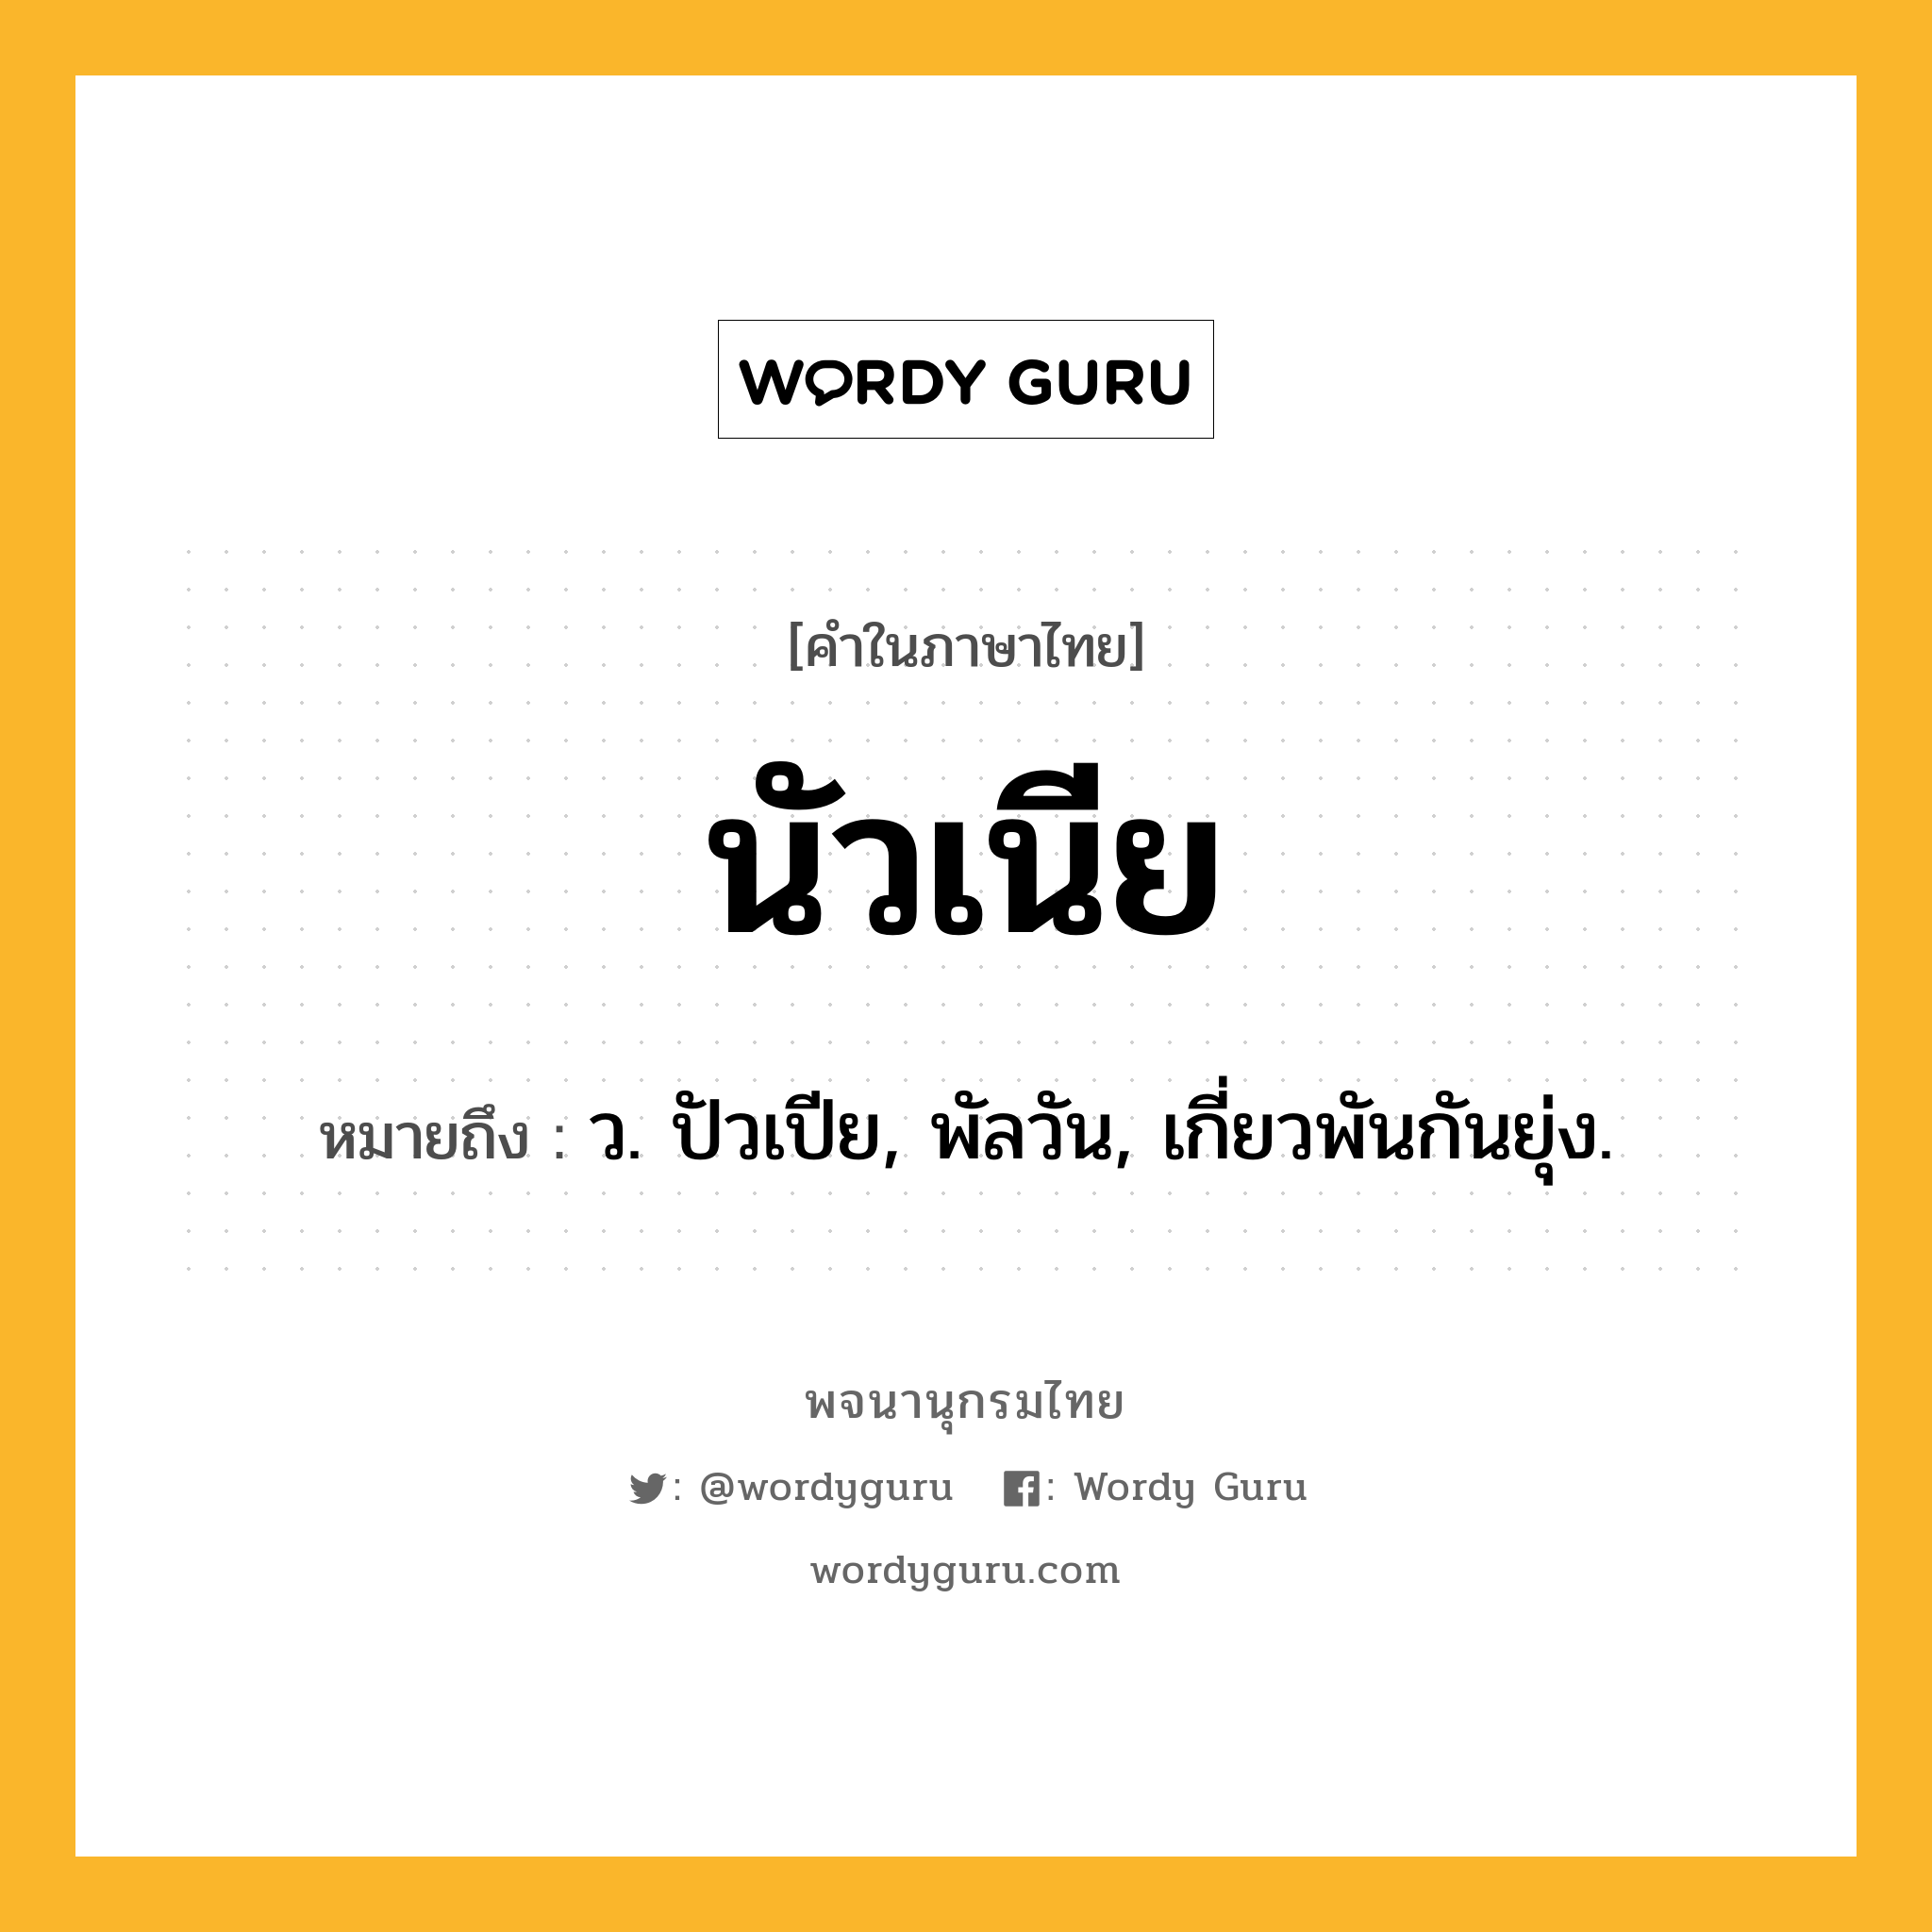 นัวเนีย ความหมาย หมายถึงอะไร?, คำในภาษาไทย นัวเนีย หมายถึง ว. ปัวเปีย, พัลวัน, เกี่ยวพันกันยุ่ง.